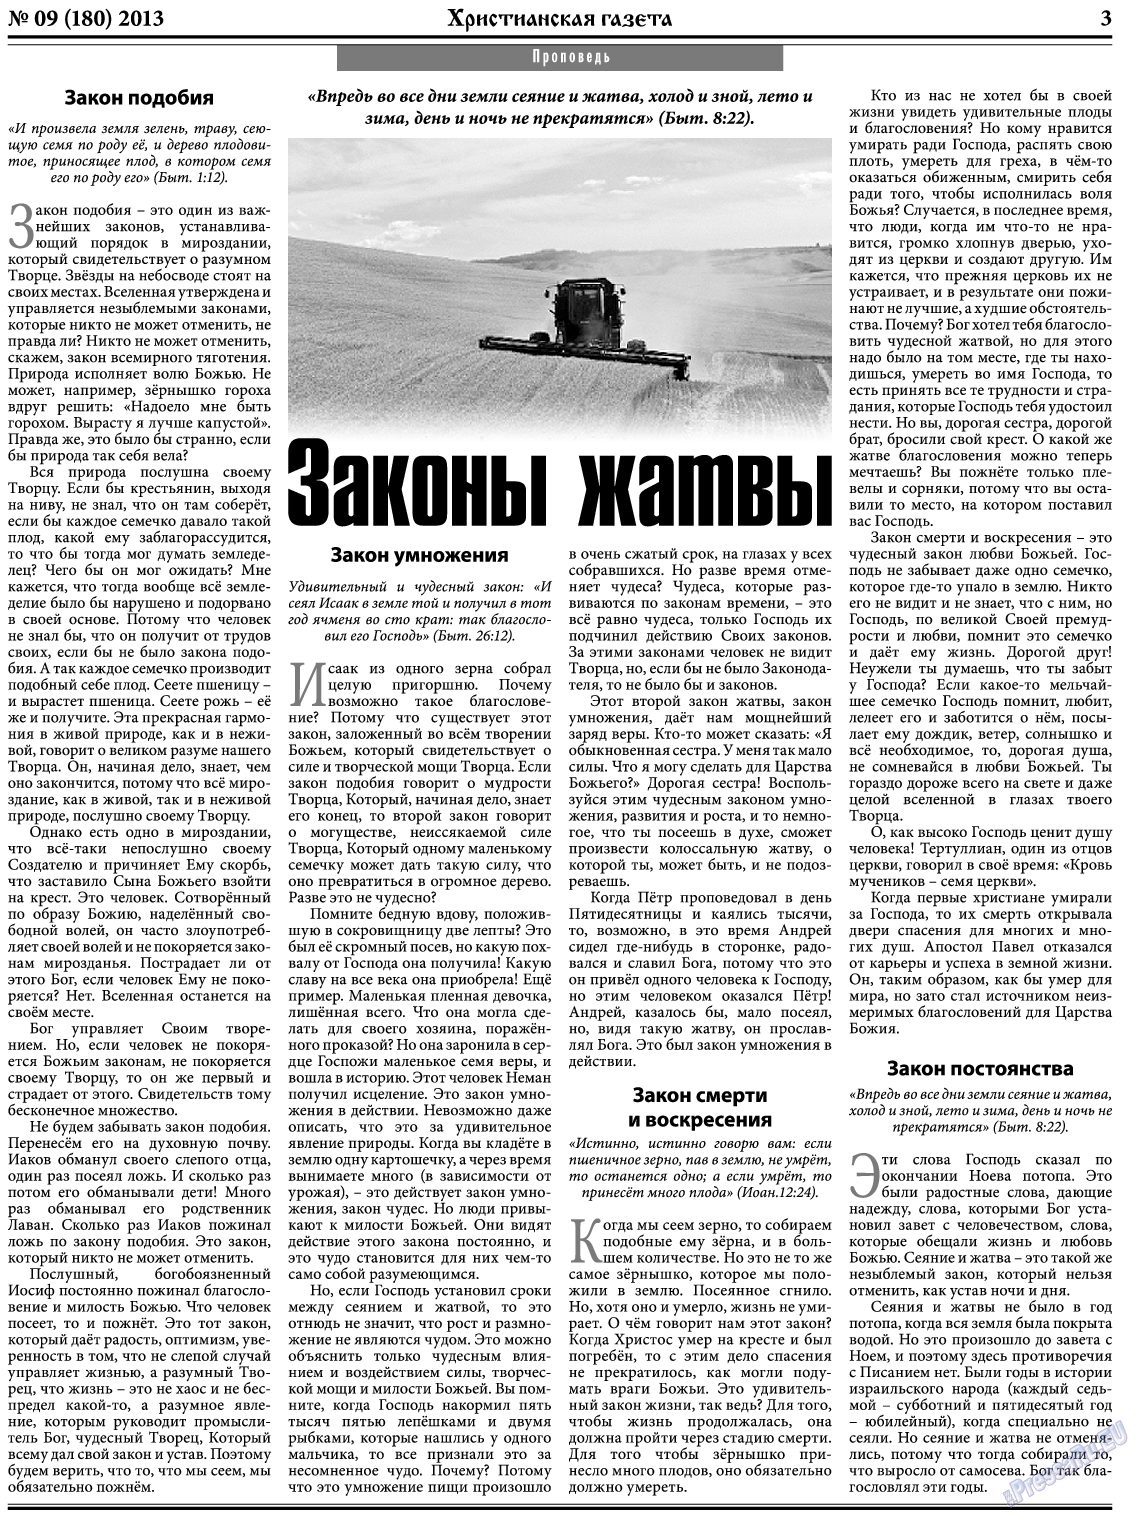 Христианская газета, газета. 2013 №9 стр.3